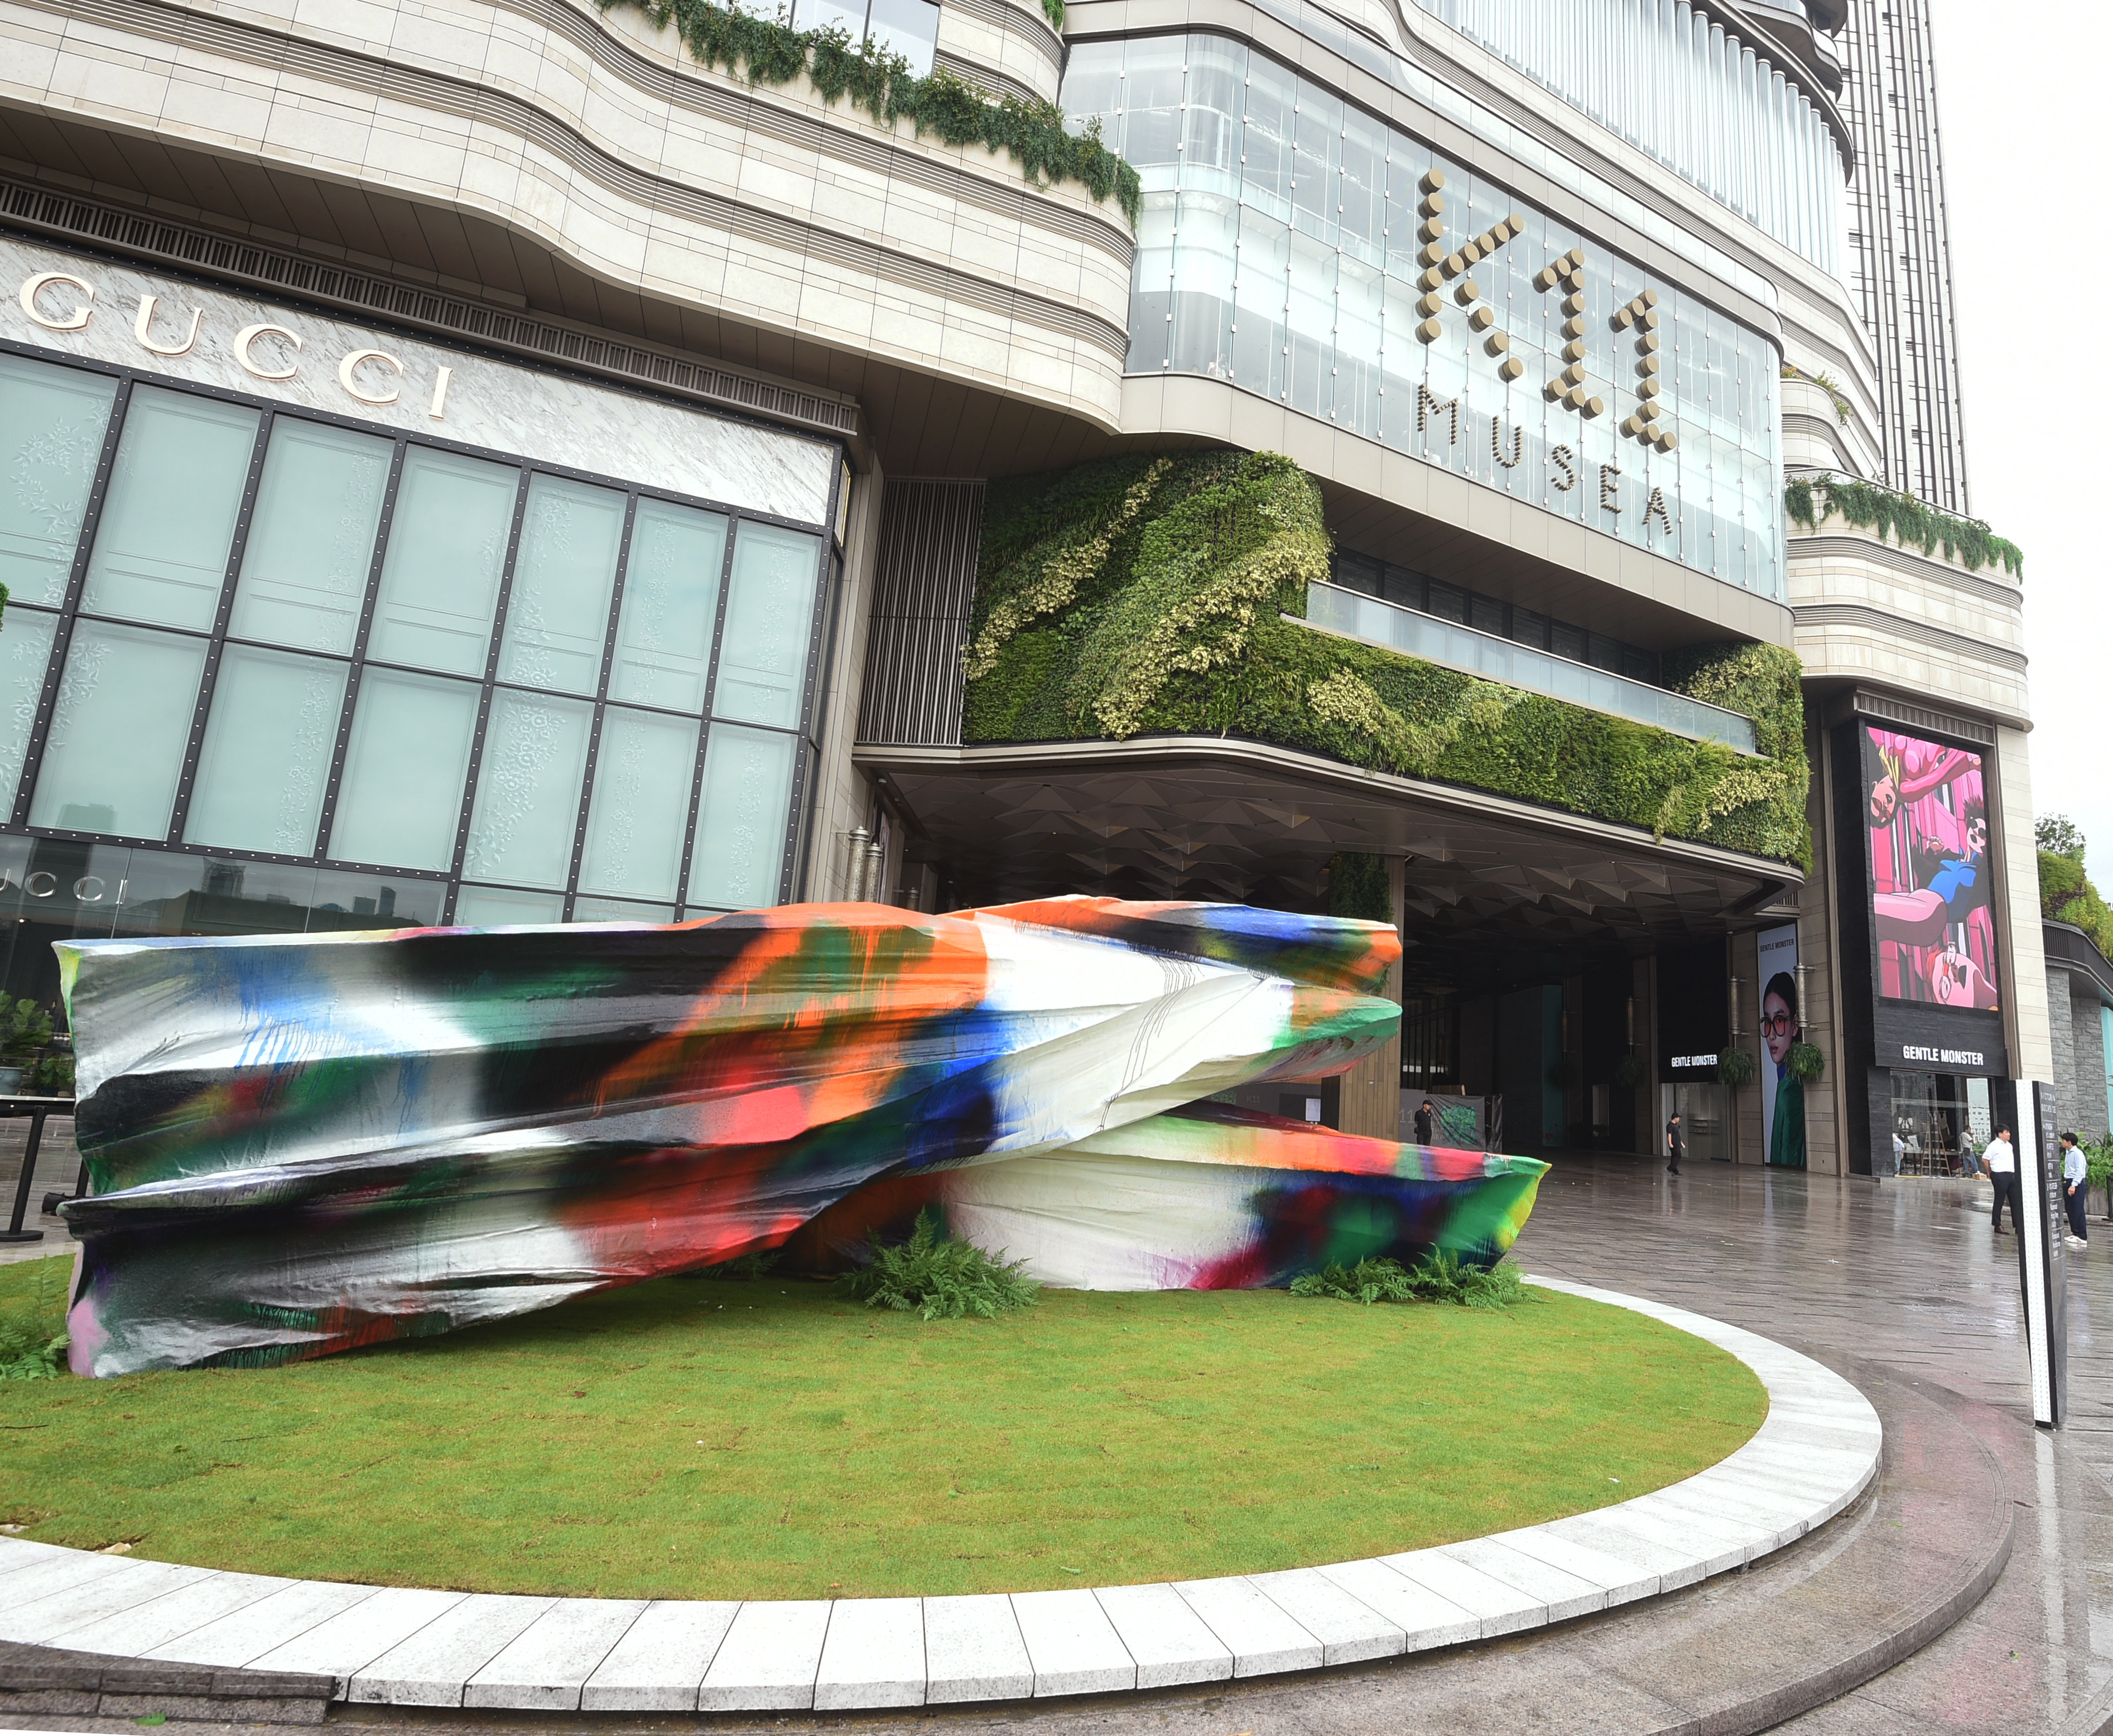 K11 MUSEA Opens At Hong Kong’s Victoria Dockside 